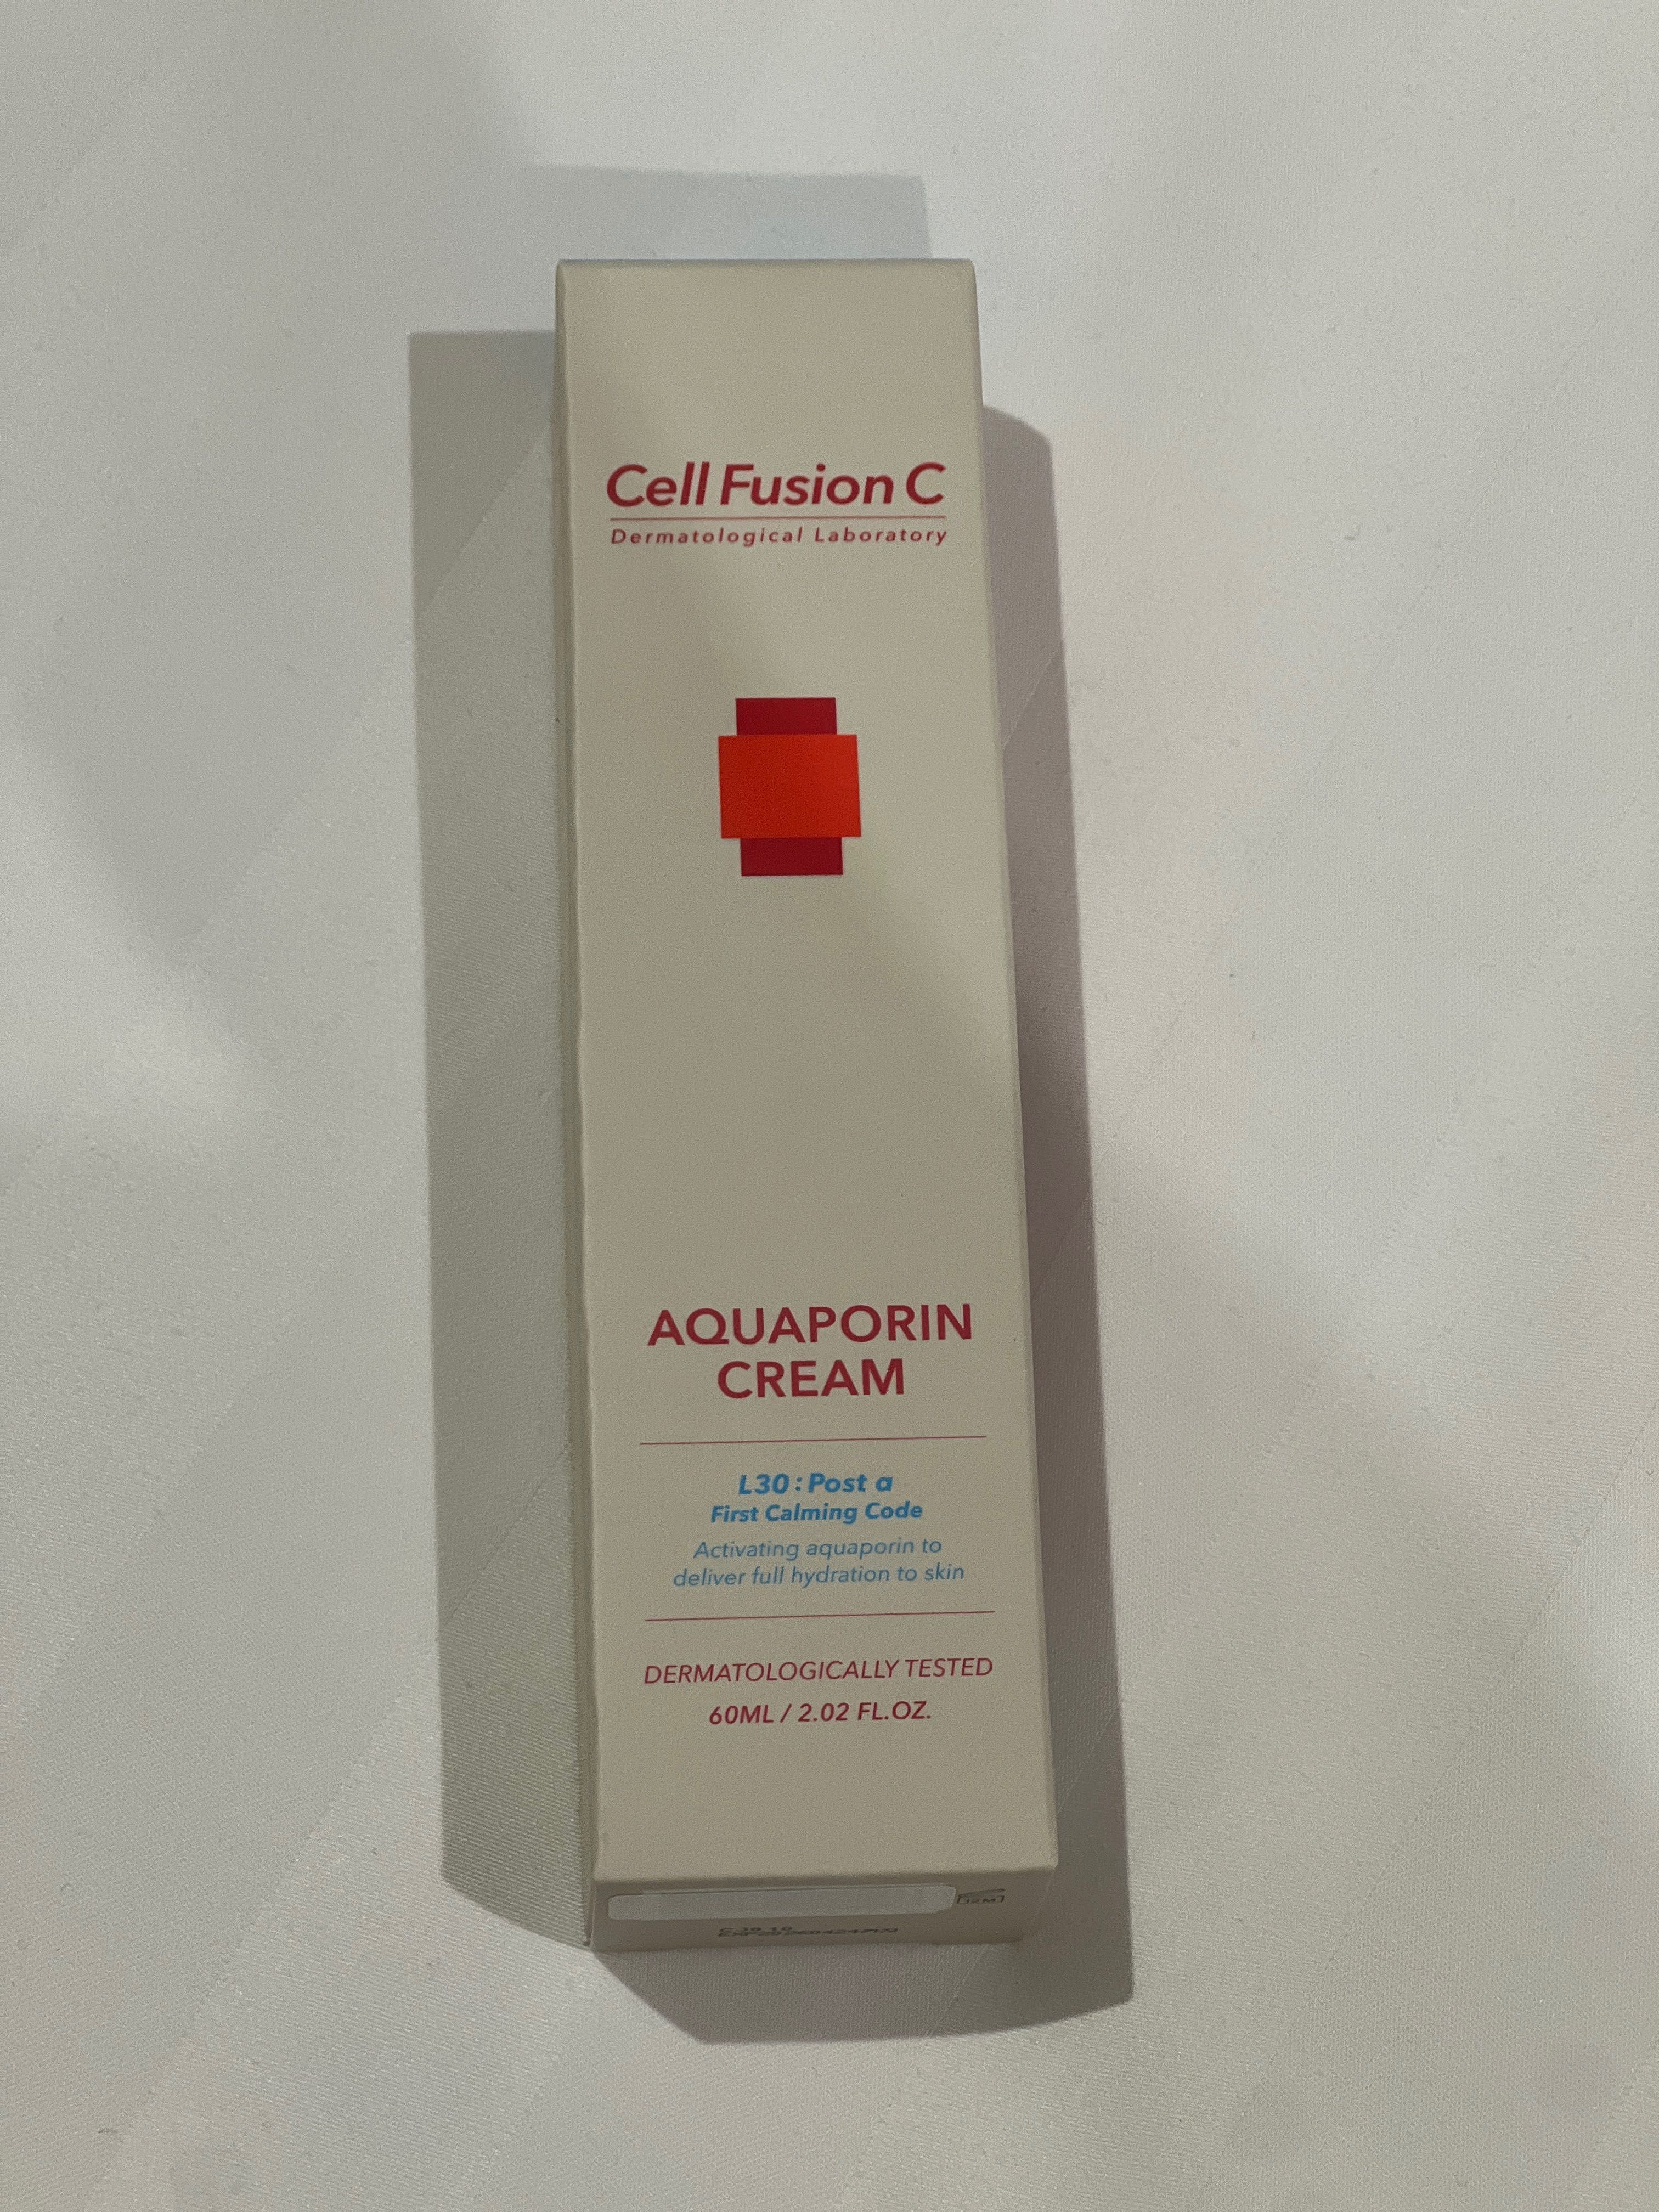 Cell Fusion C aquaporin cream